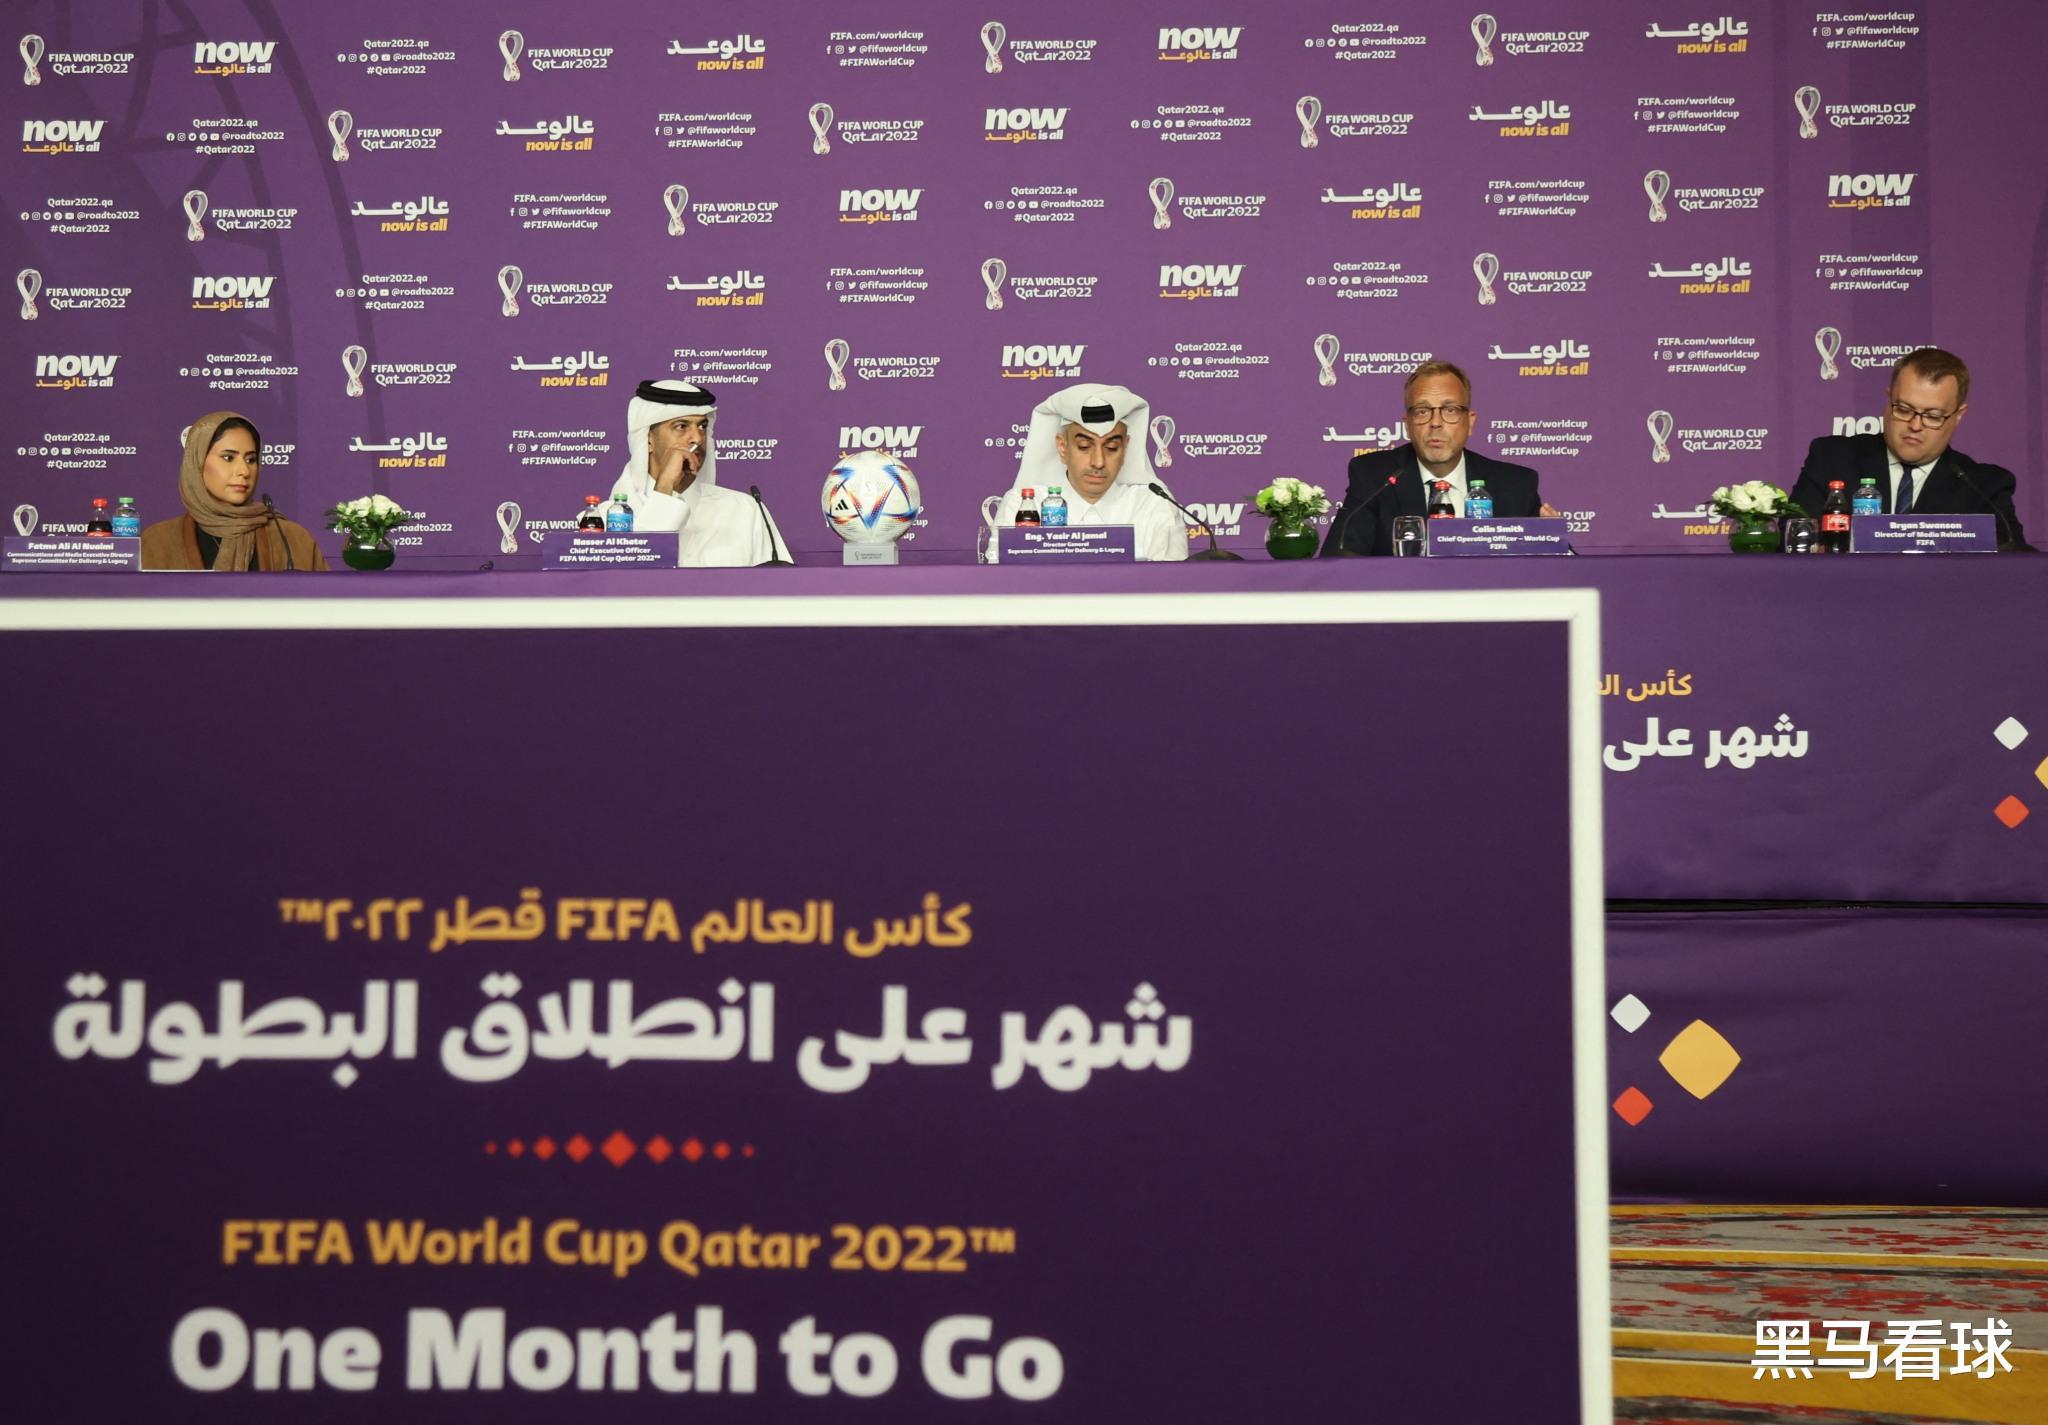 卡塔尔世界杯门票销售创纪录  球迷热度排行榜前十  官方宣称要办“史上最佳”